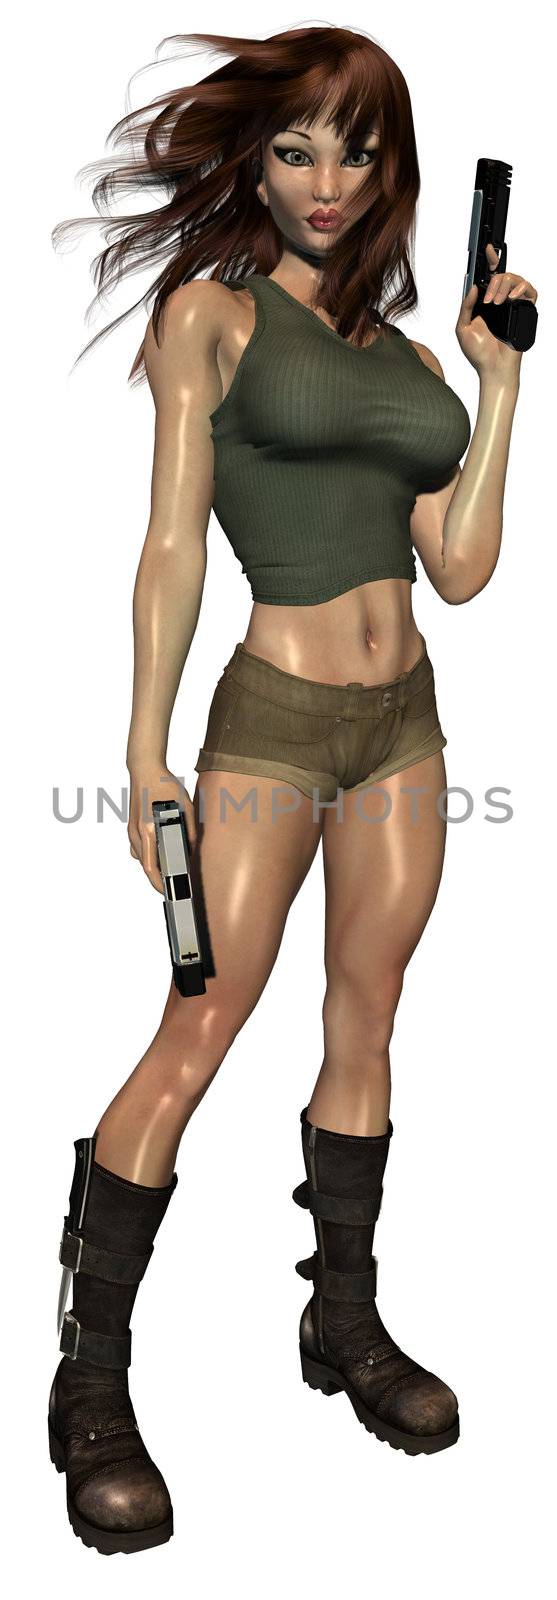 Woman Holding Guns by kathygold